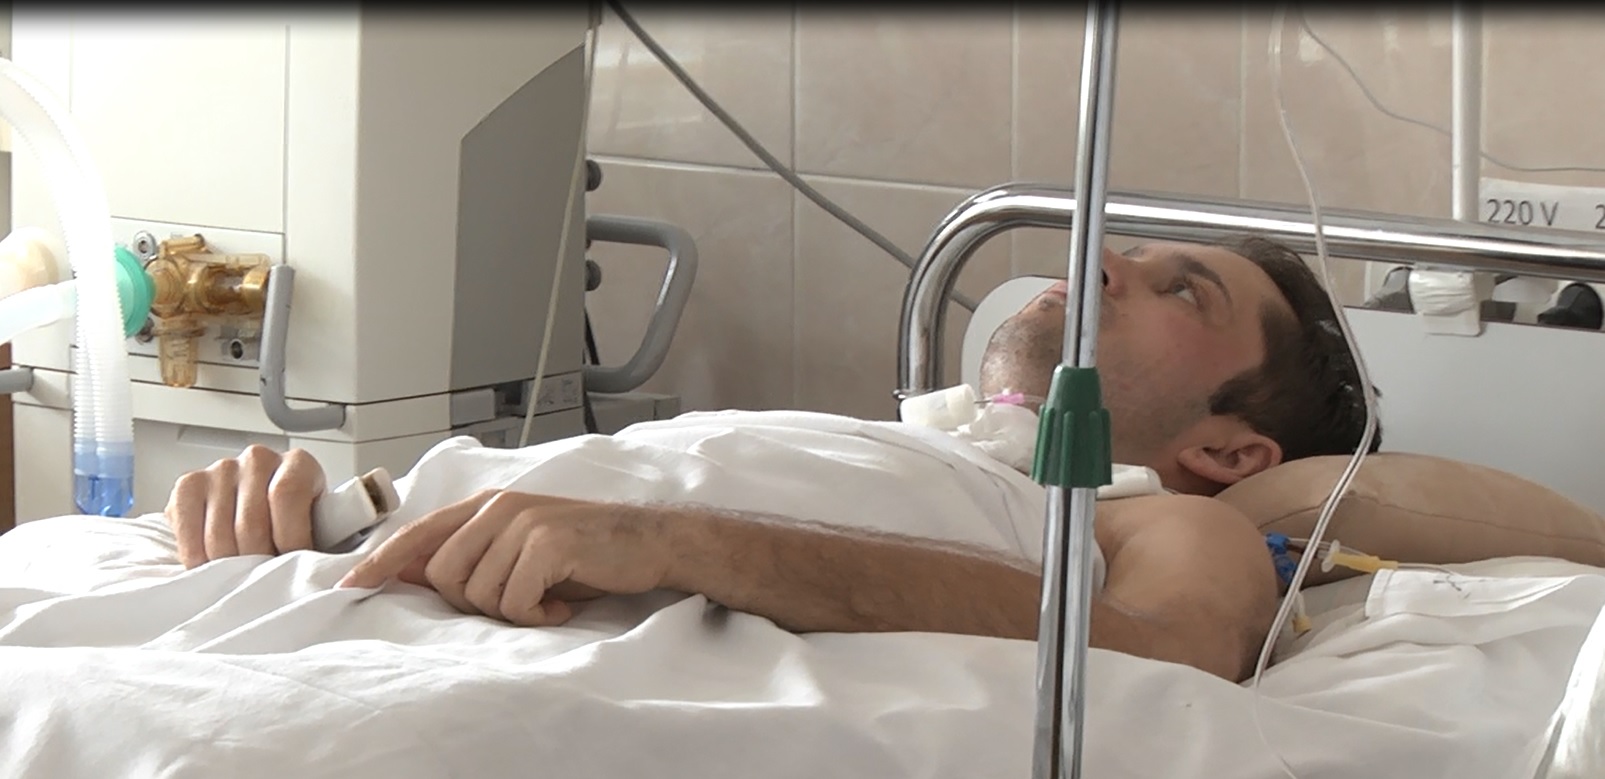 За добу в лікарню Дніпропетровська поступило троє поранених бійців